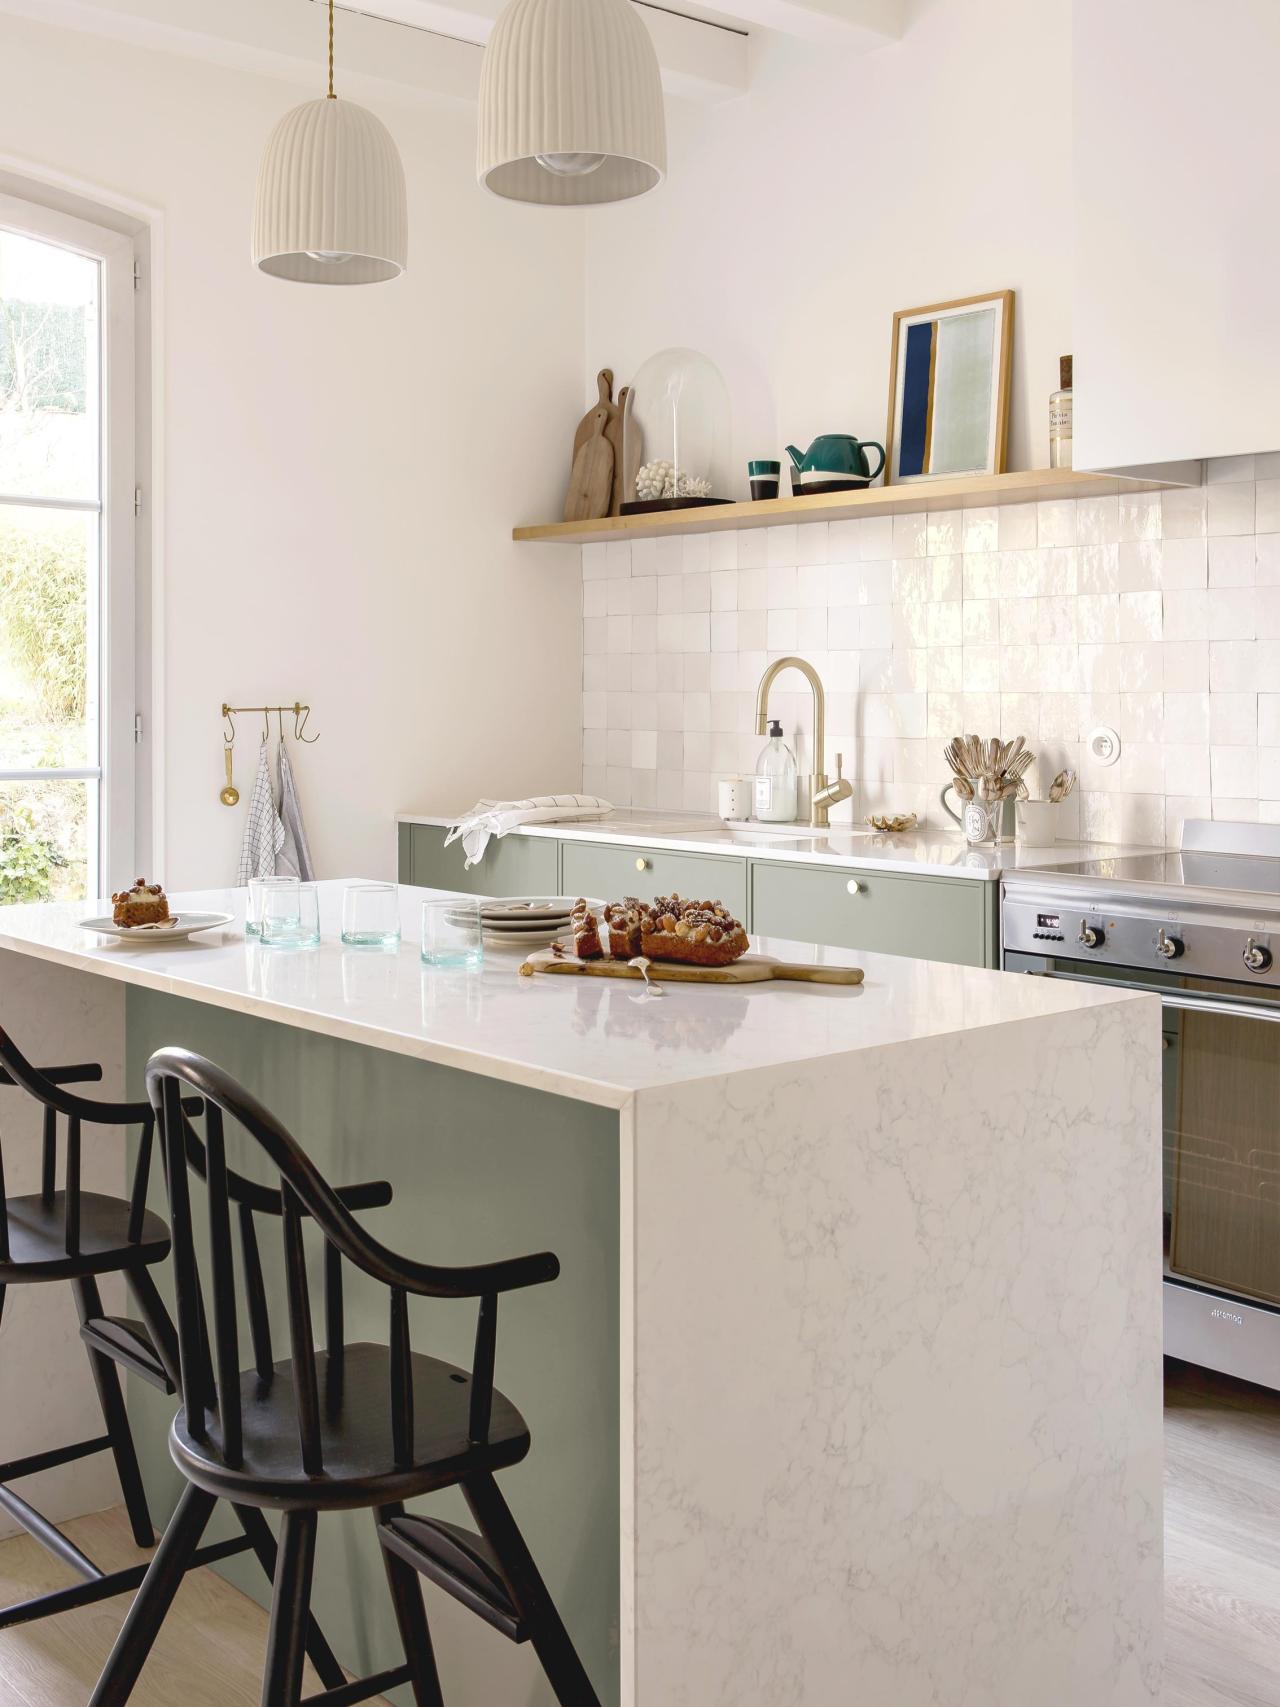 Green frame kitchen with brass details and zellige backsplash